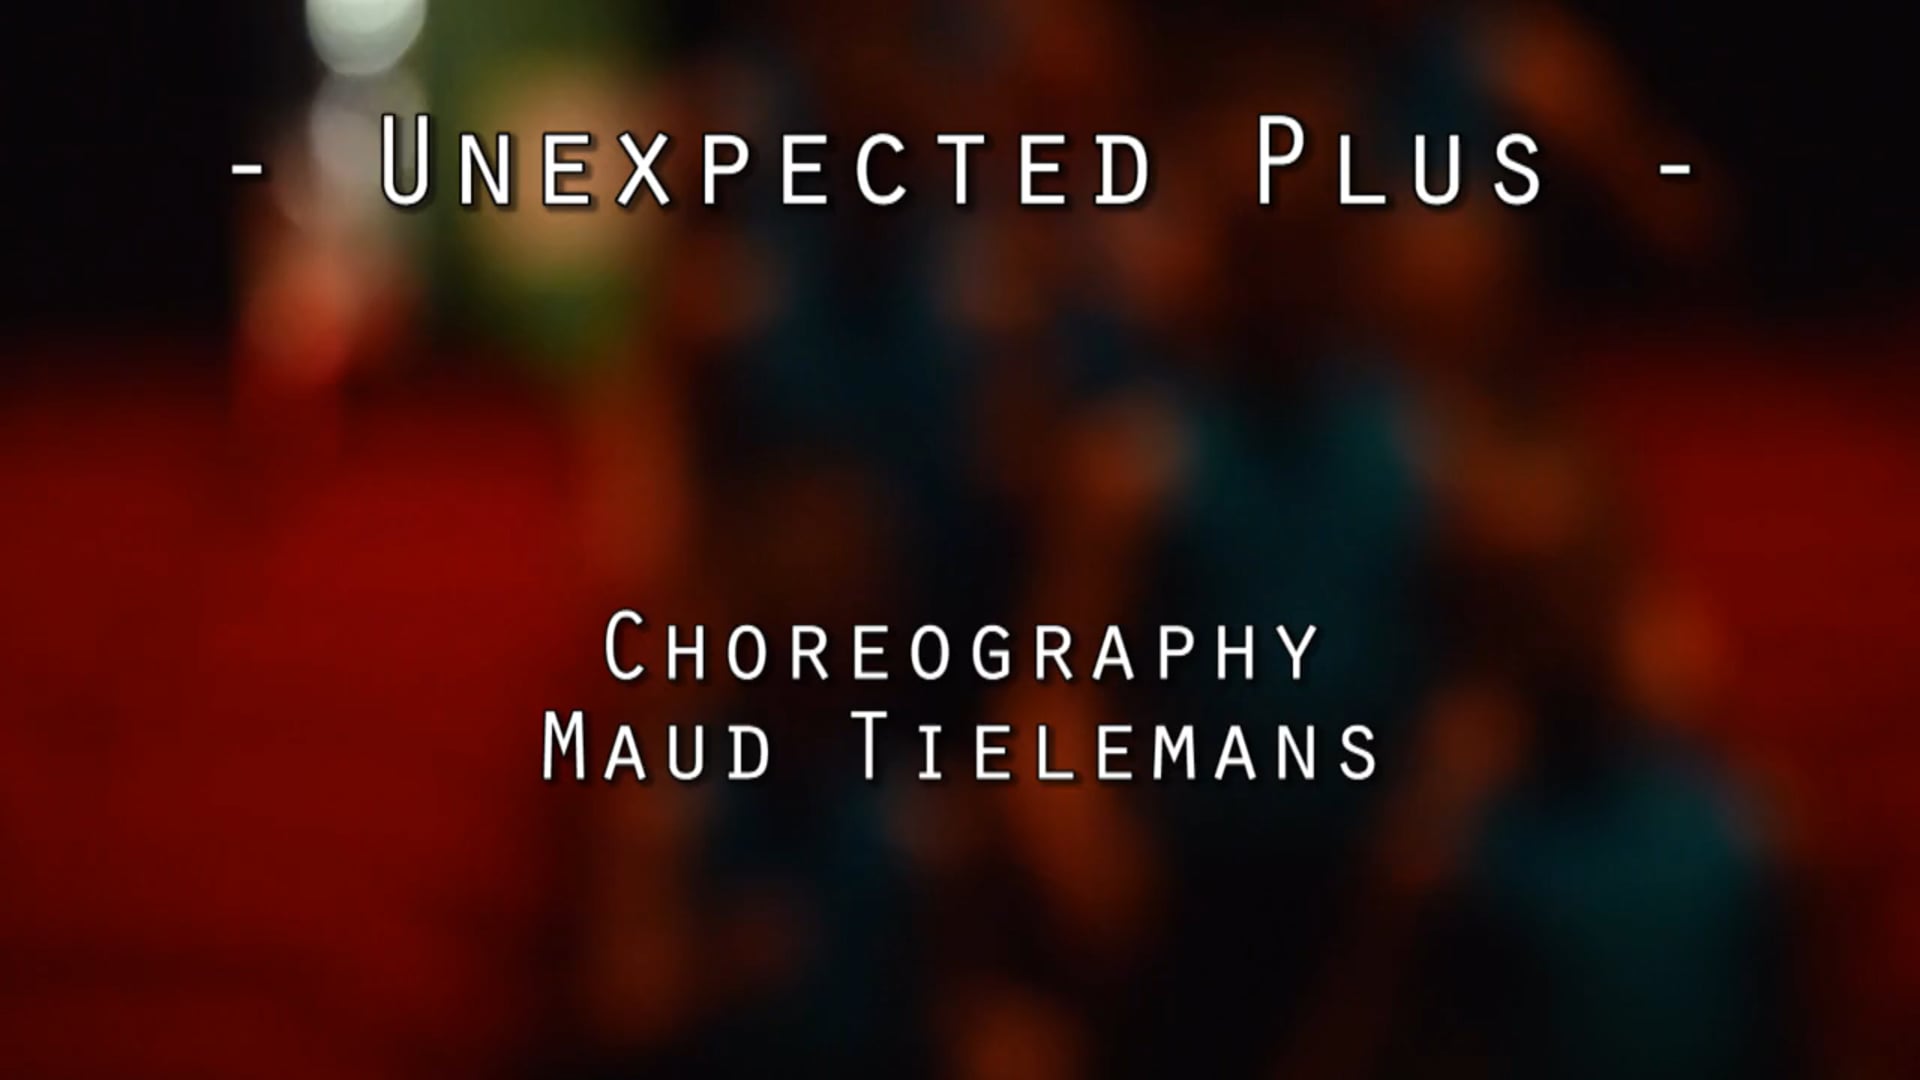 Unexpected Plus - Maud Tielemans